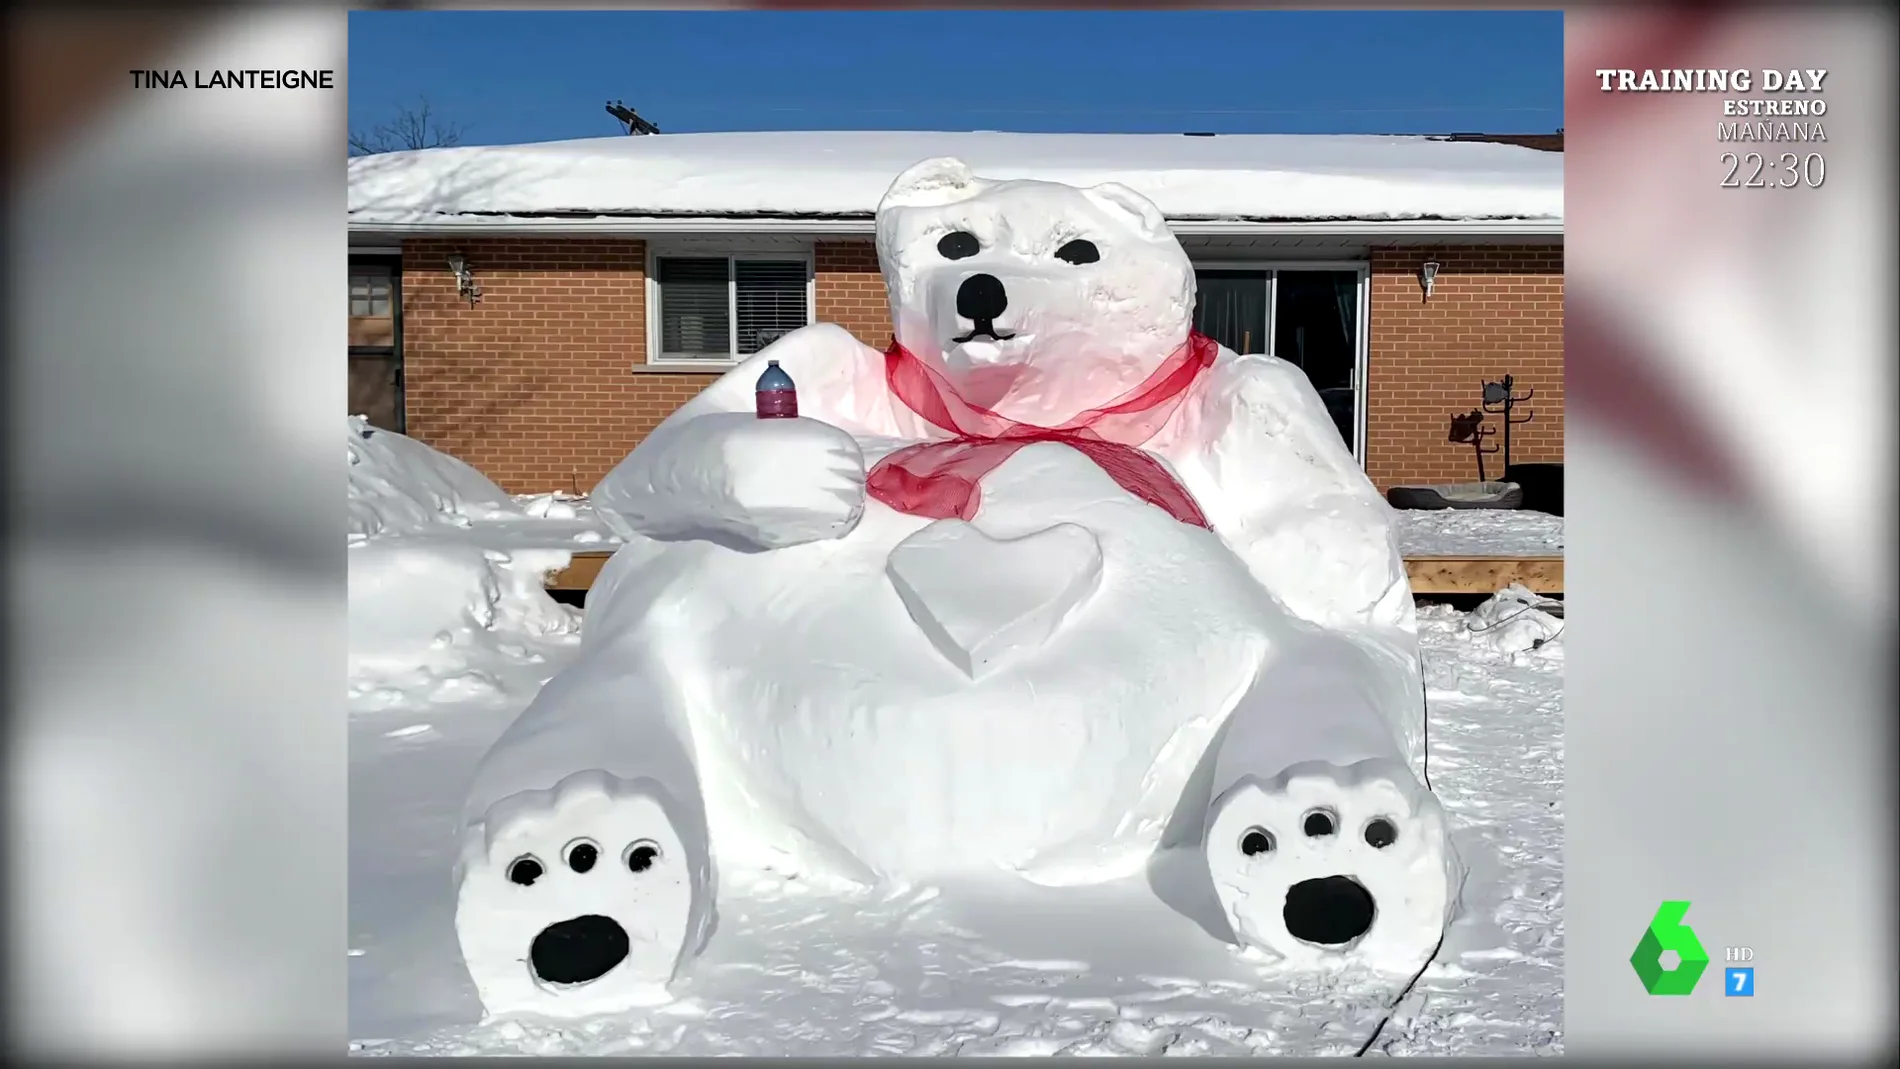 Un hombre construye un gigantesco (e inquietante) oso de nieve para sorprender a su pareja por San Valentín